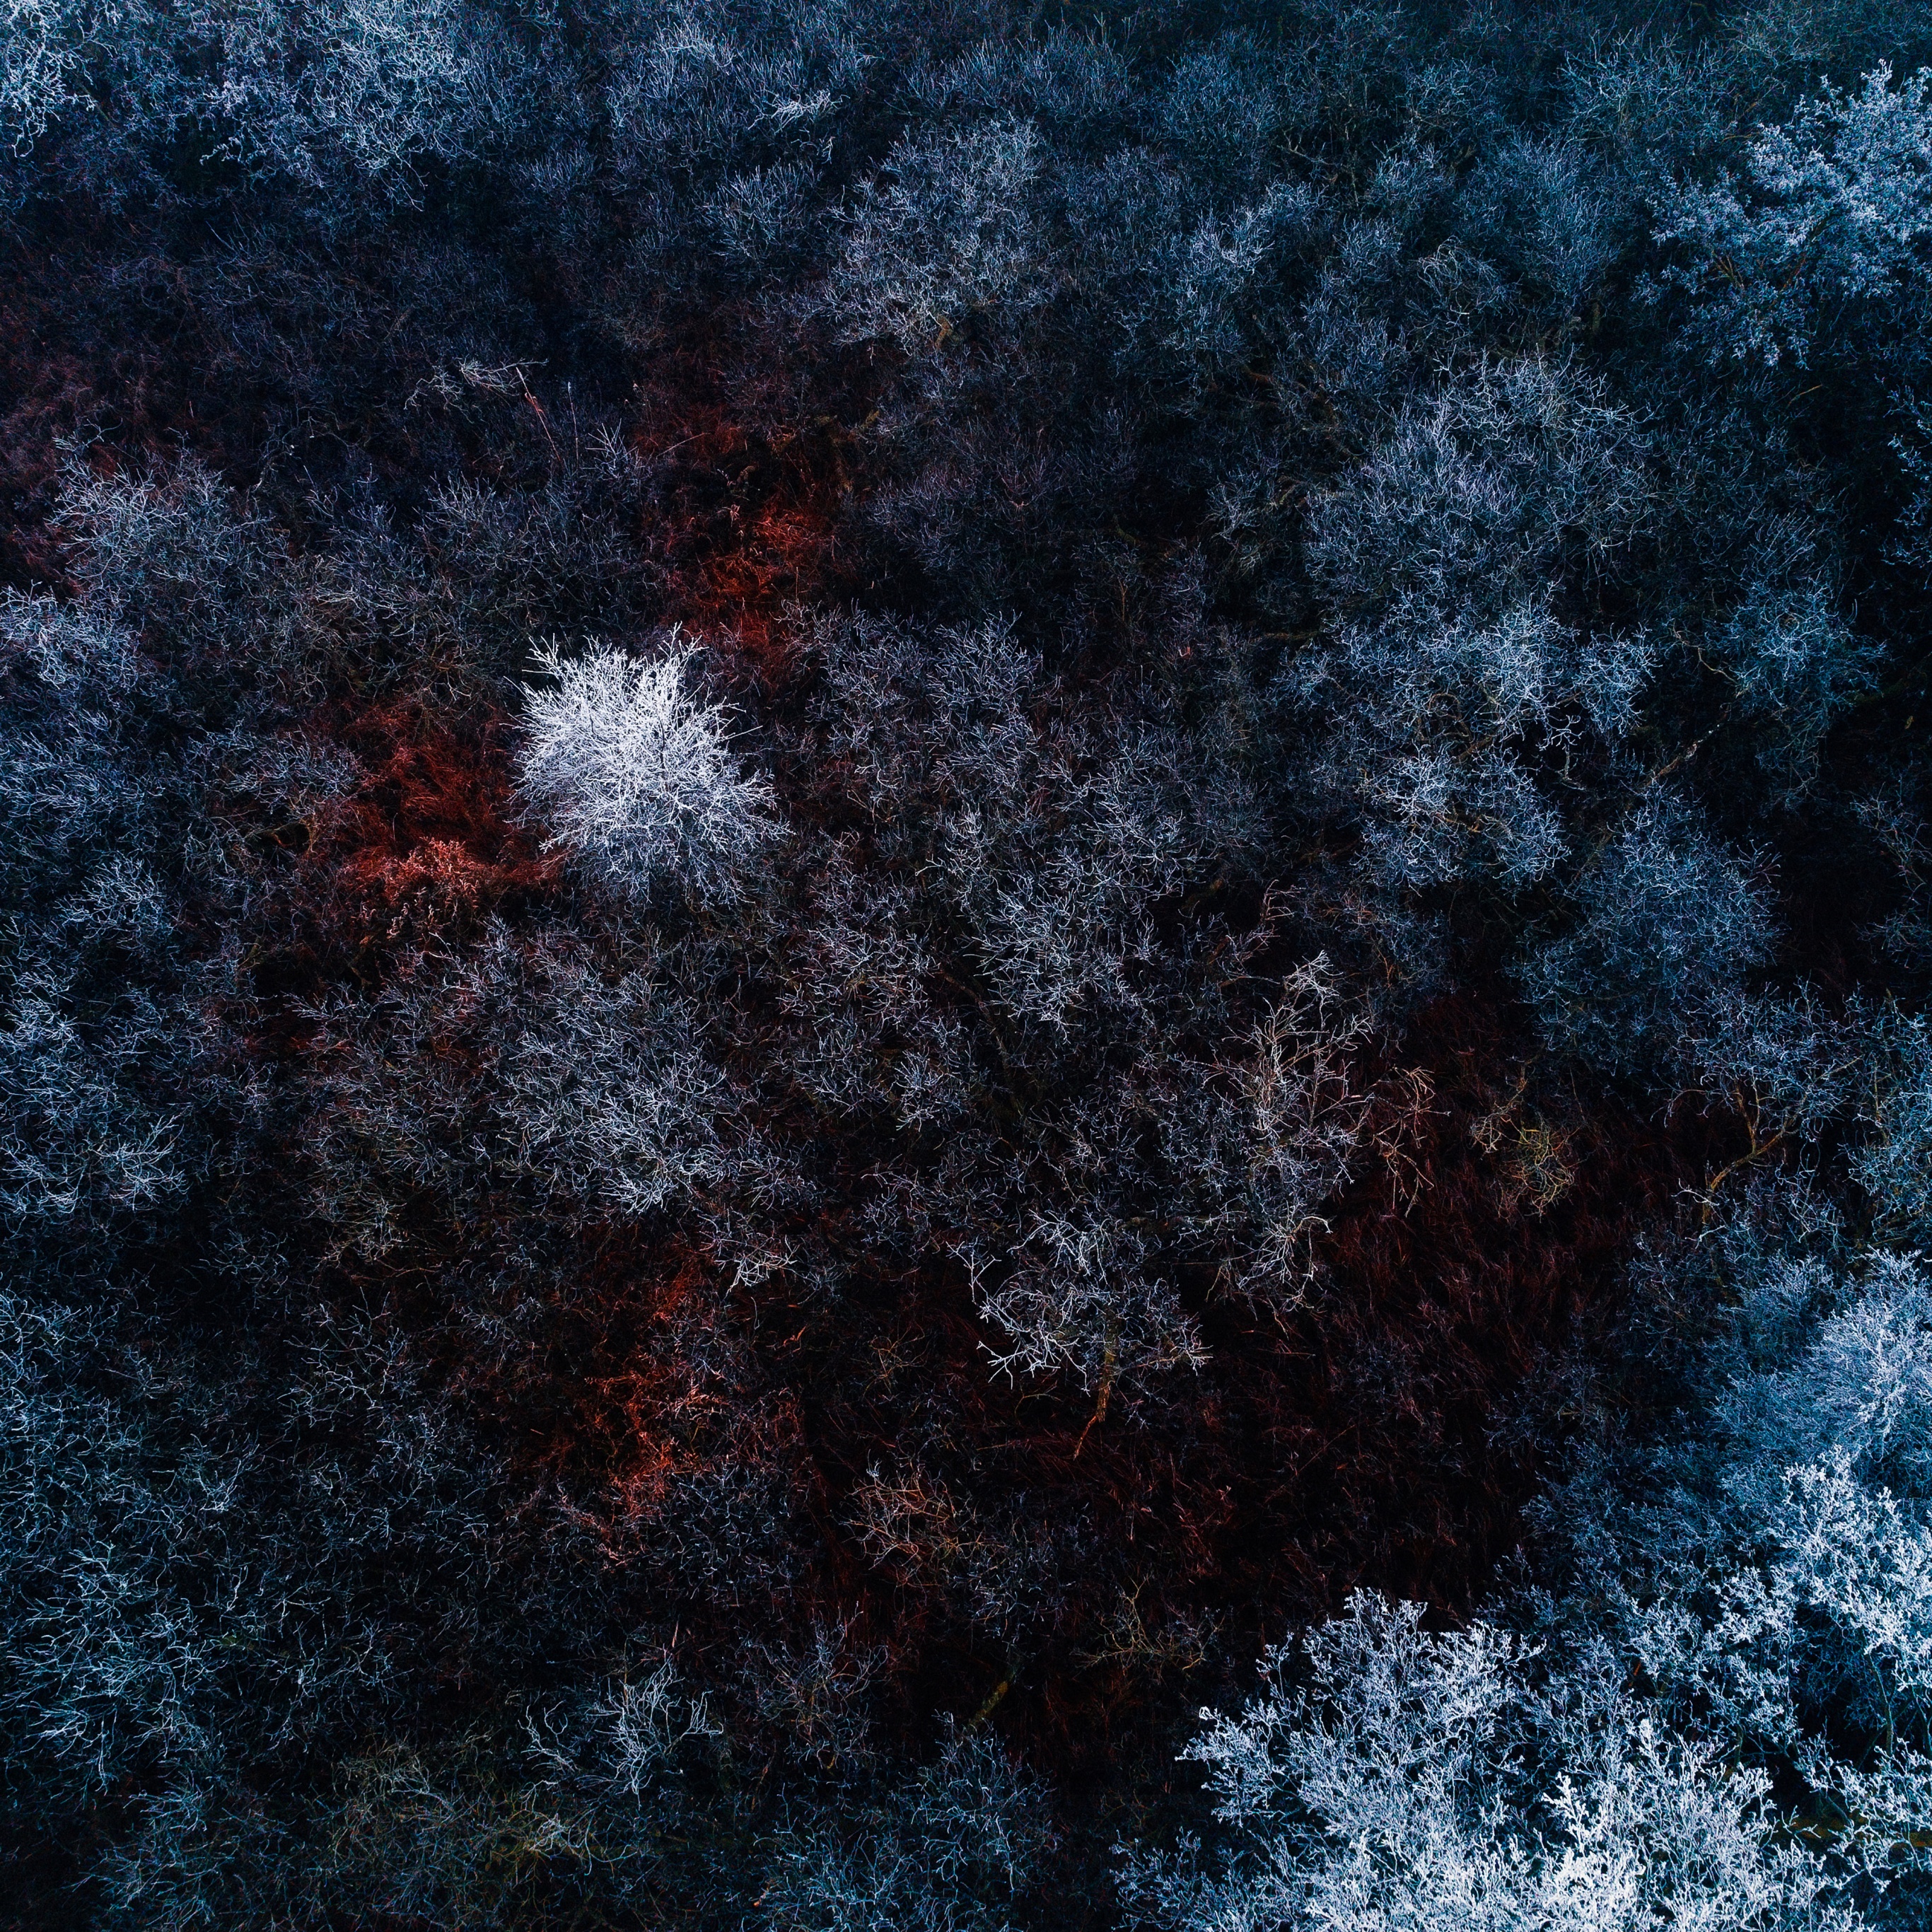 Khám phá vẻ đẹp kỳ diệu của những cánh rừng rực rỡ mùa đông. Tận hưởng không khí lạnh giá và cảm nhận được sự trầm mình đẹp nhất của thiên nhiên. Hãy để ánh sáng trên thiên nhiên thắp sáng cho thiết bị của bạn.